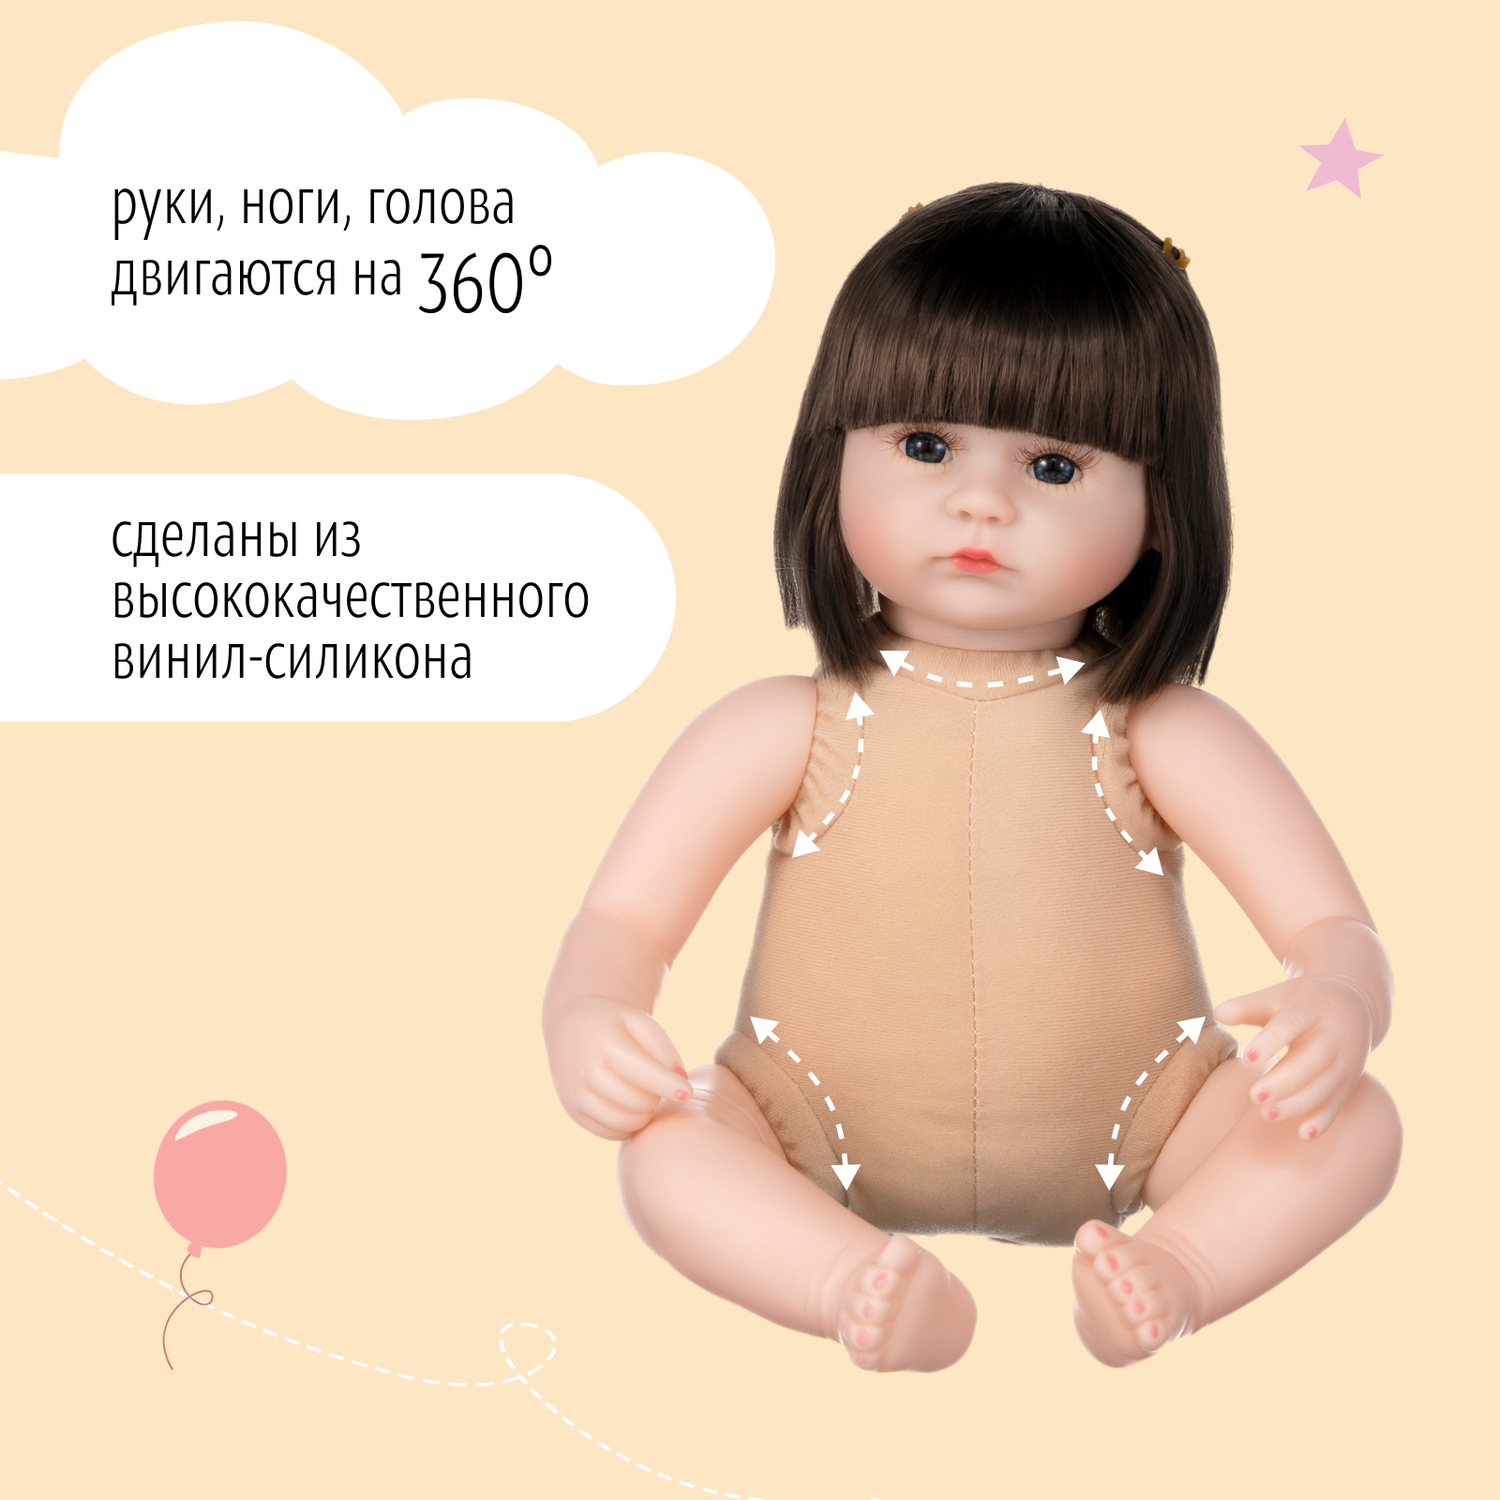 Кукла Реборн QA BABY Варвара девочка большая пупс набор игрушки для девочки 42 см 45008 - фото 12